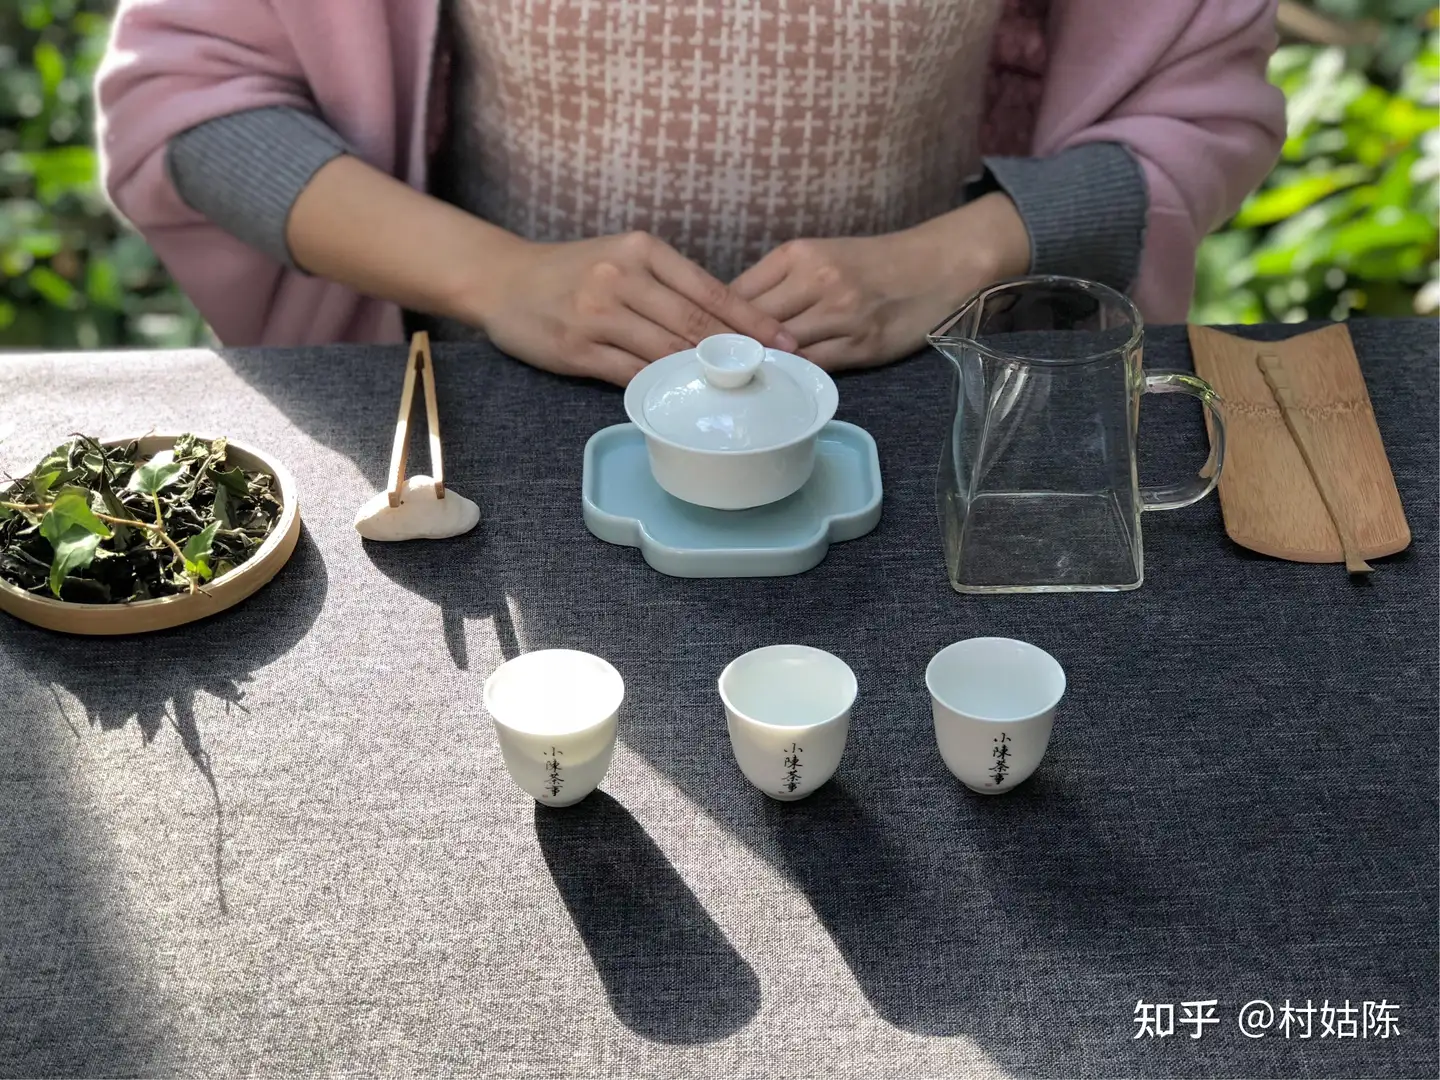 为何多数茶具都没有“把”？理一理中国茶具的起源， 有些事情就很合理了 